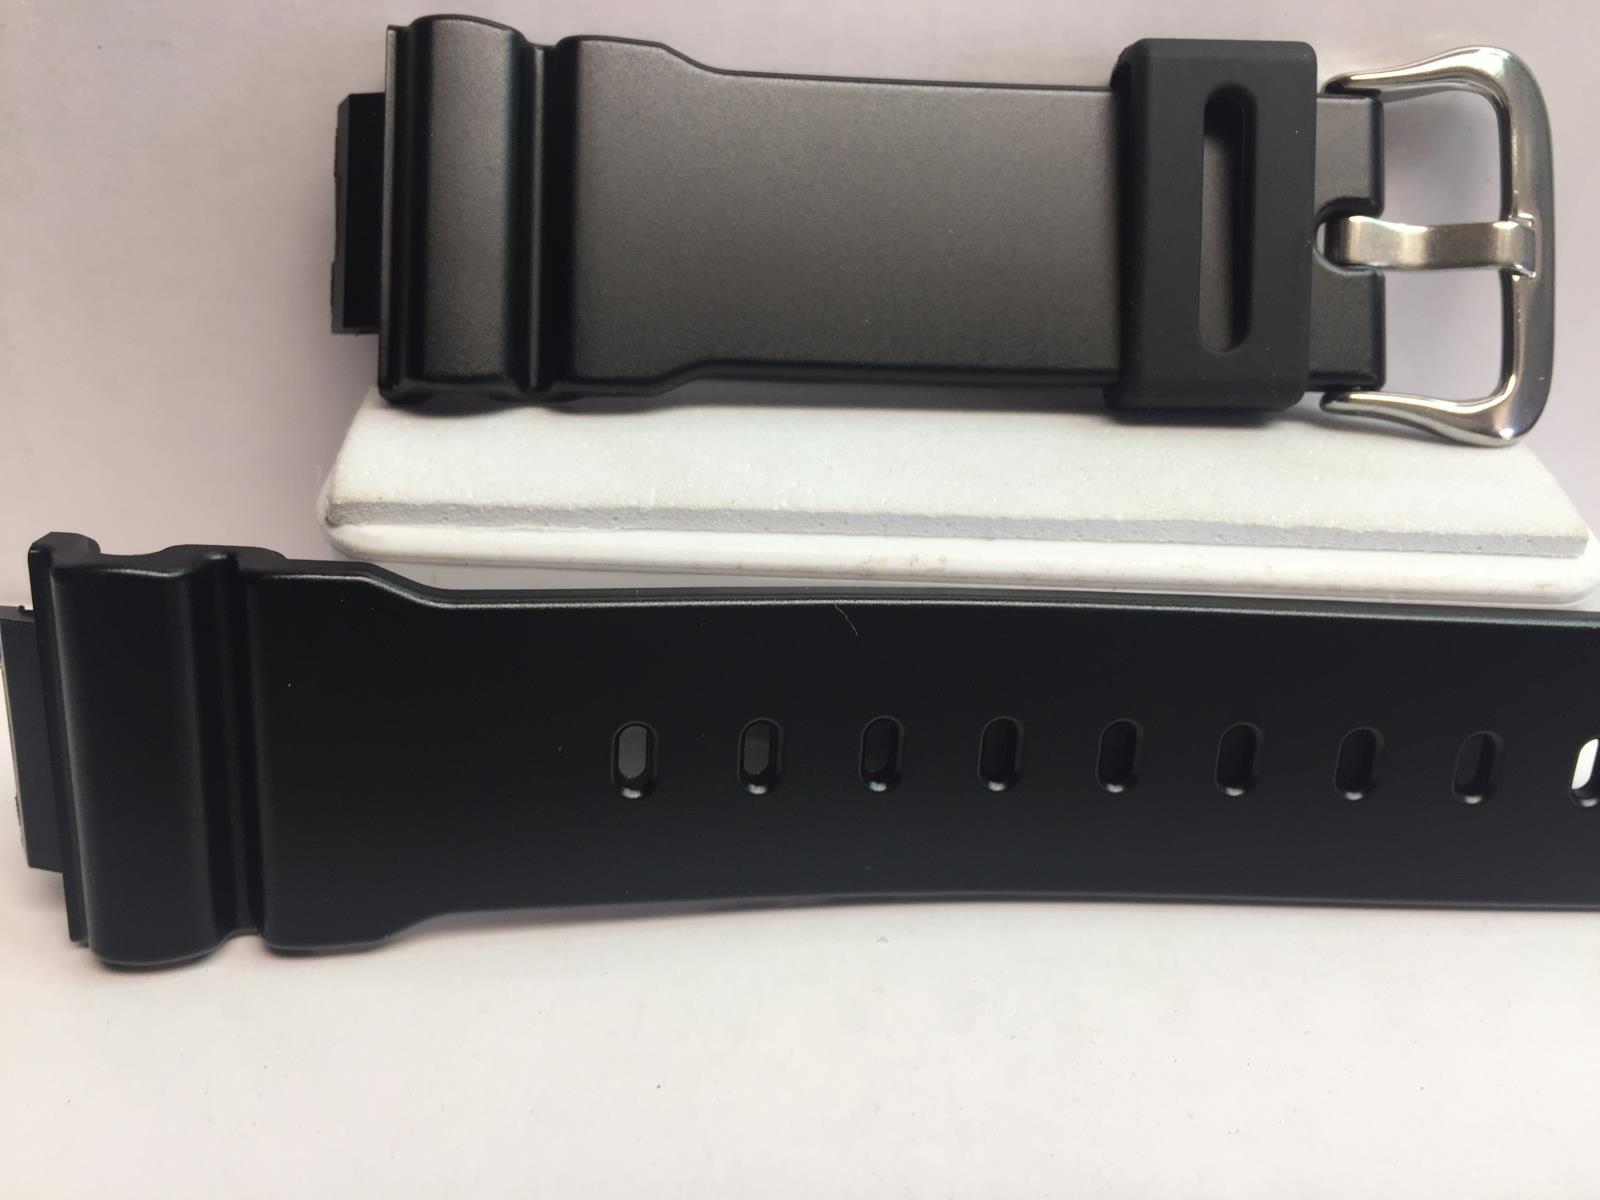 Casio Watchband Polished Black fits: DW-6900,GB-5600,GB-6900,GW-M5610